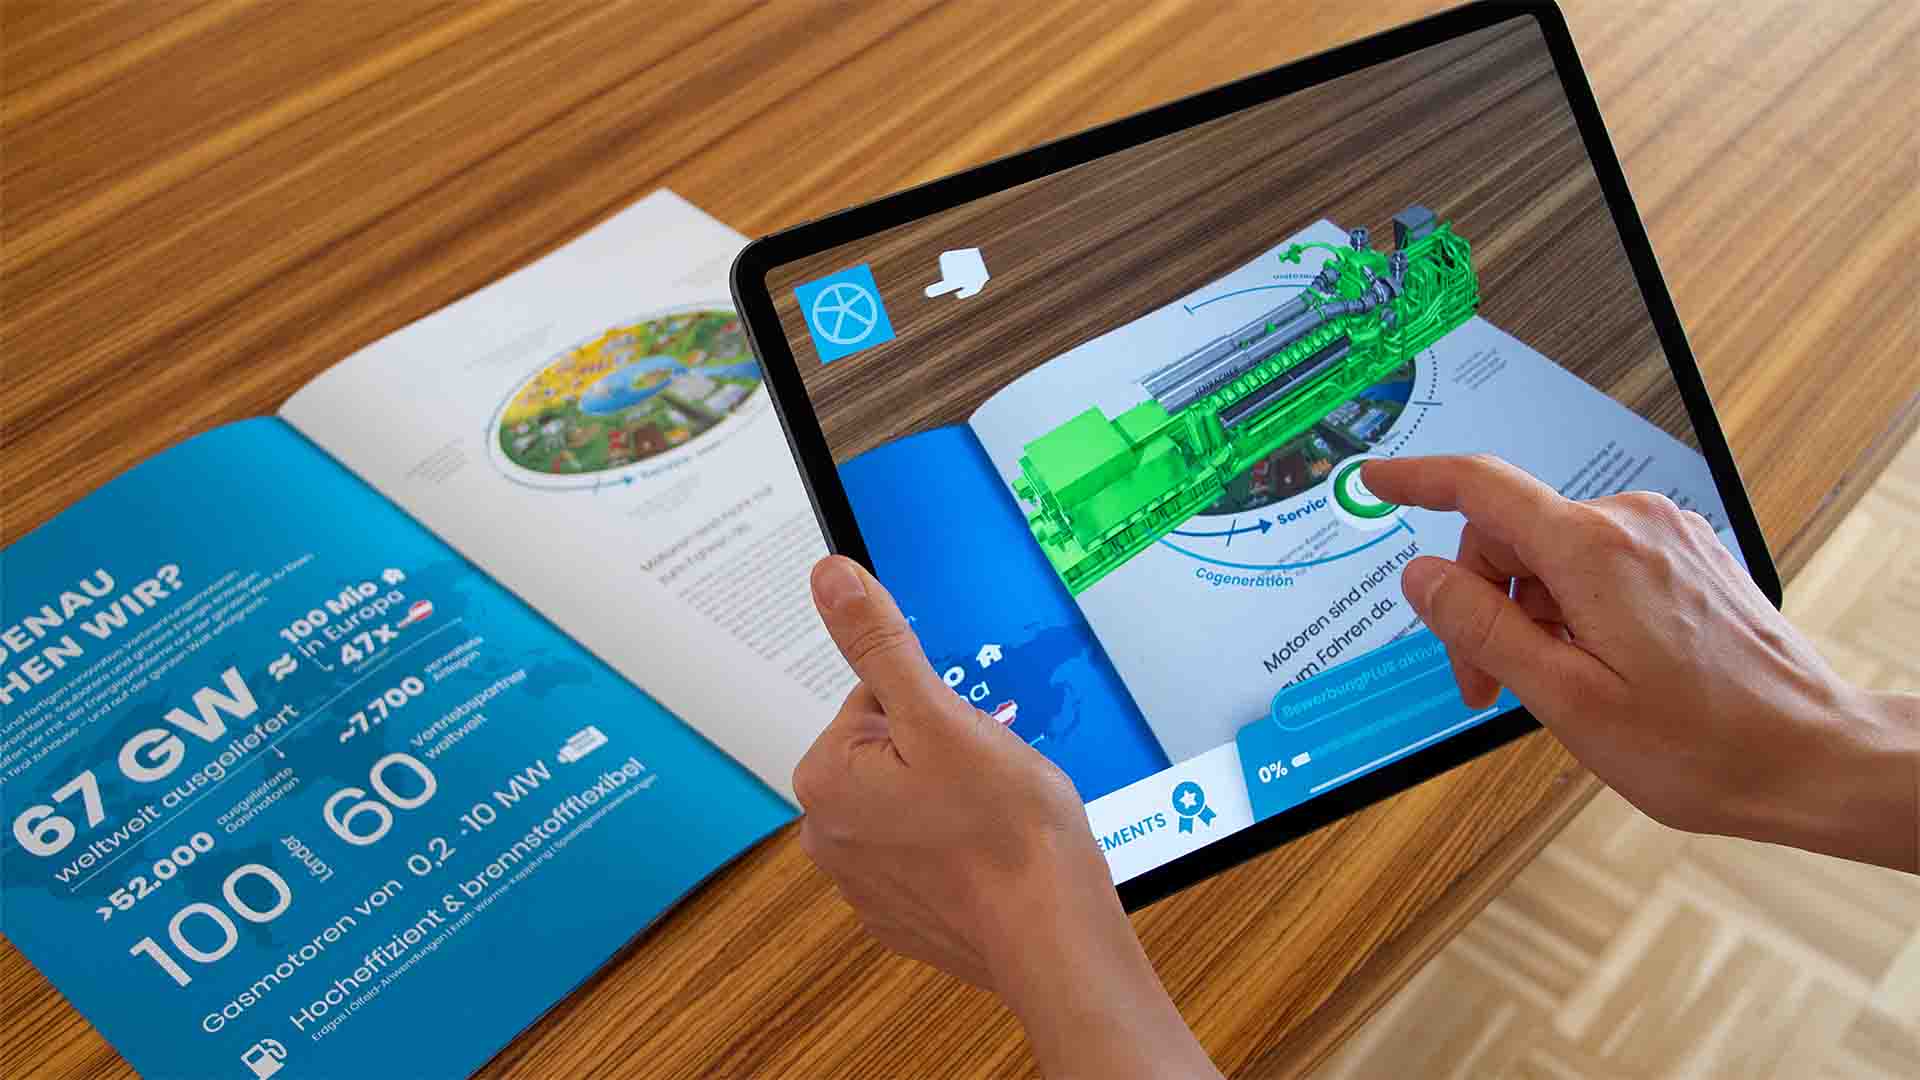 Die Augmented Reality App „Lehre bei Innio“ erweitert den gedruckten Lehrlingsfolder mit virtuellen Inhalten, die nach und nach freigeschaltet werden.